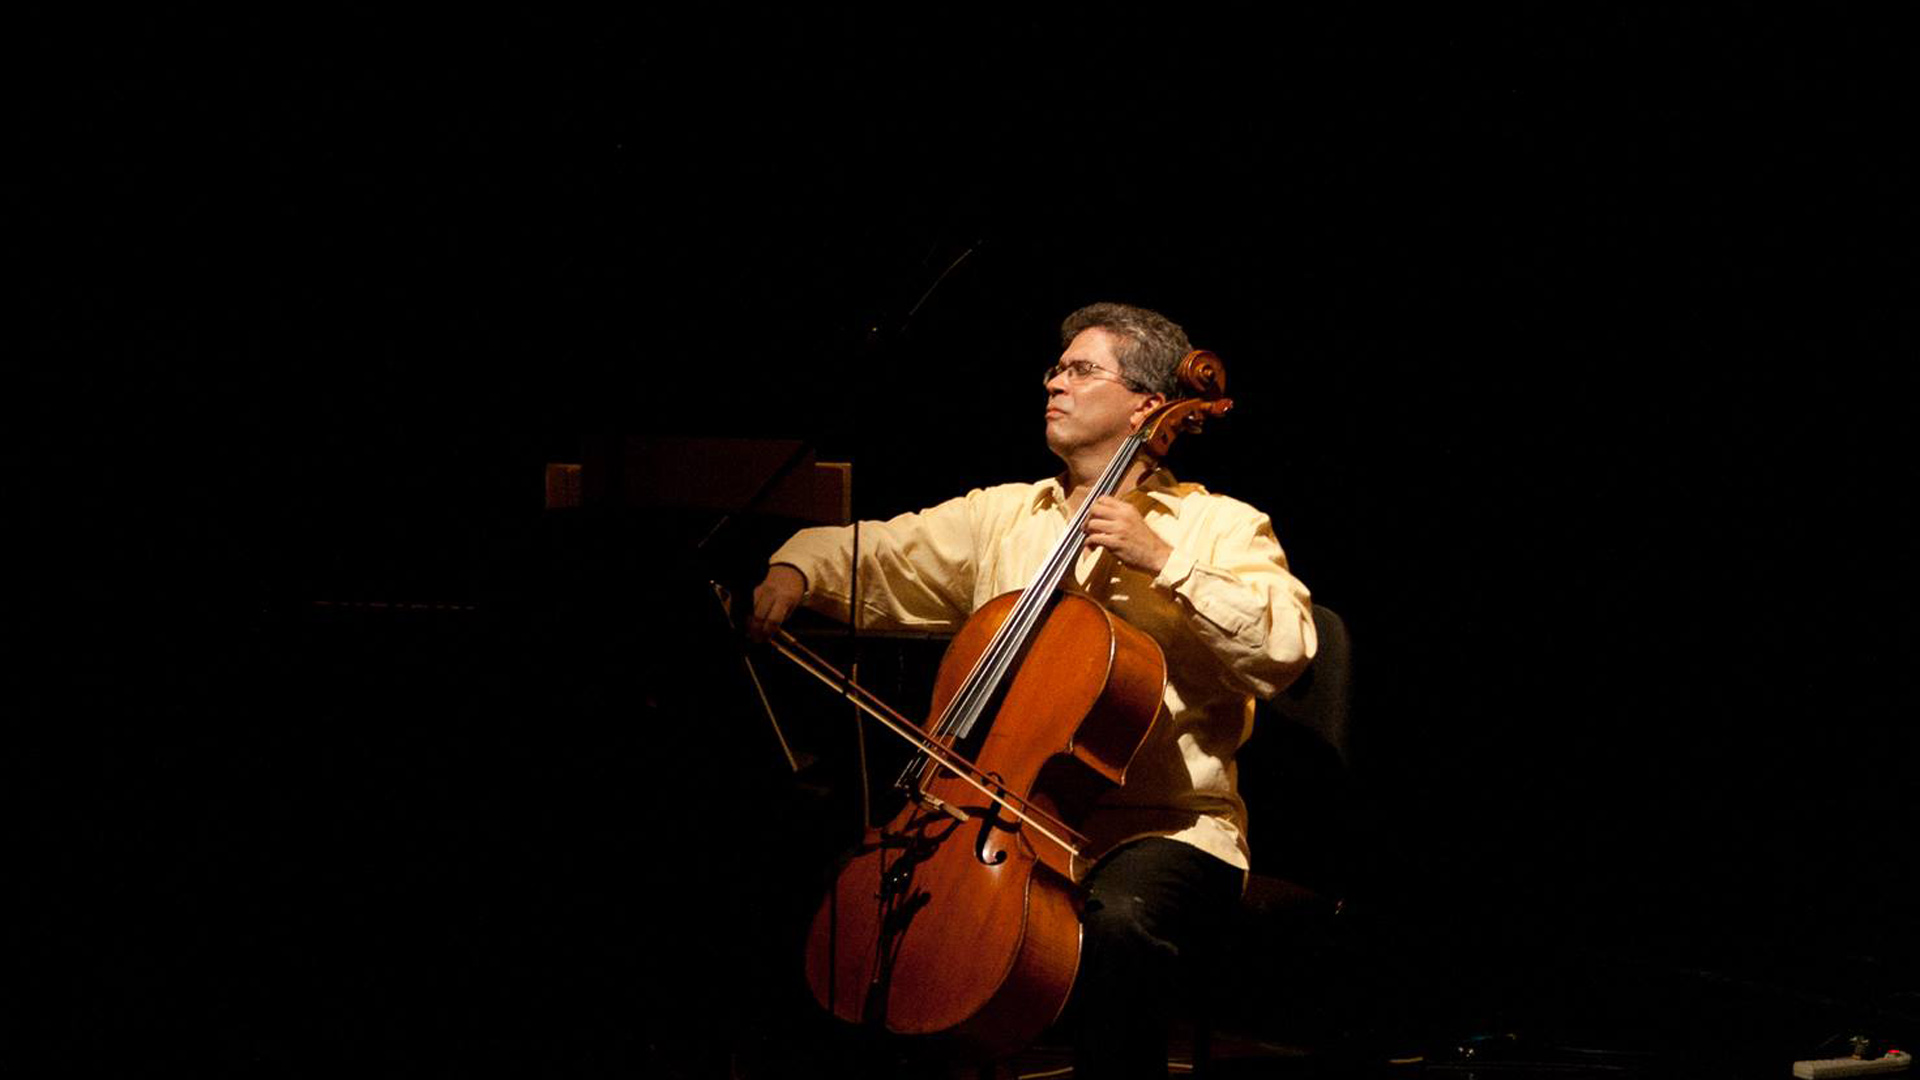 El violoncellista Germán Marcano, dará un concierto recorriendo joropos, merengues, valses y danzas venezolanas